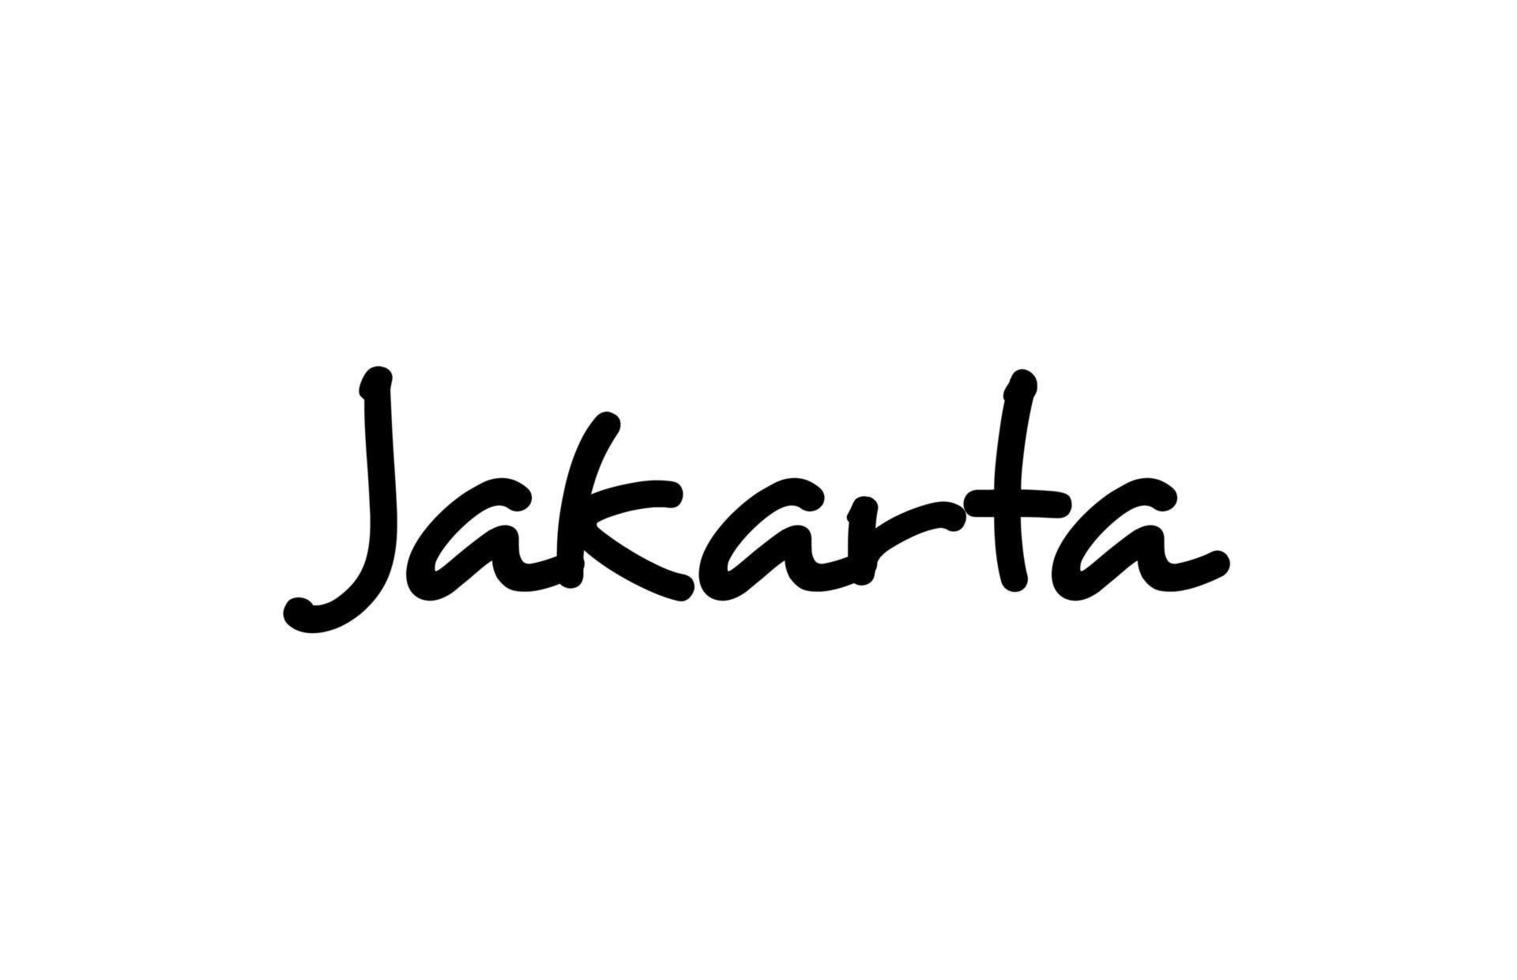 lettrage de main de texte de mot manuscrit de la ville de jakarta. texte de calligraphie. typographie en couleur noire vecteur